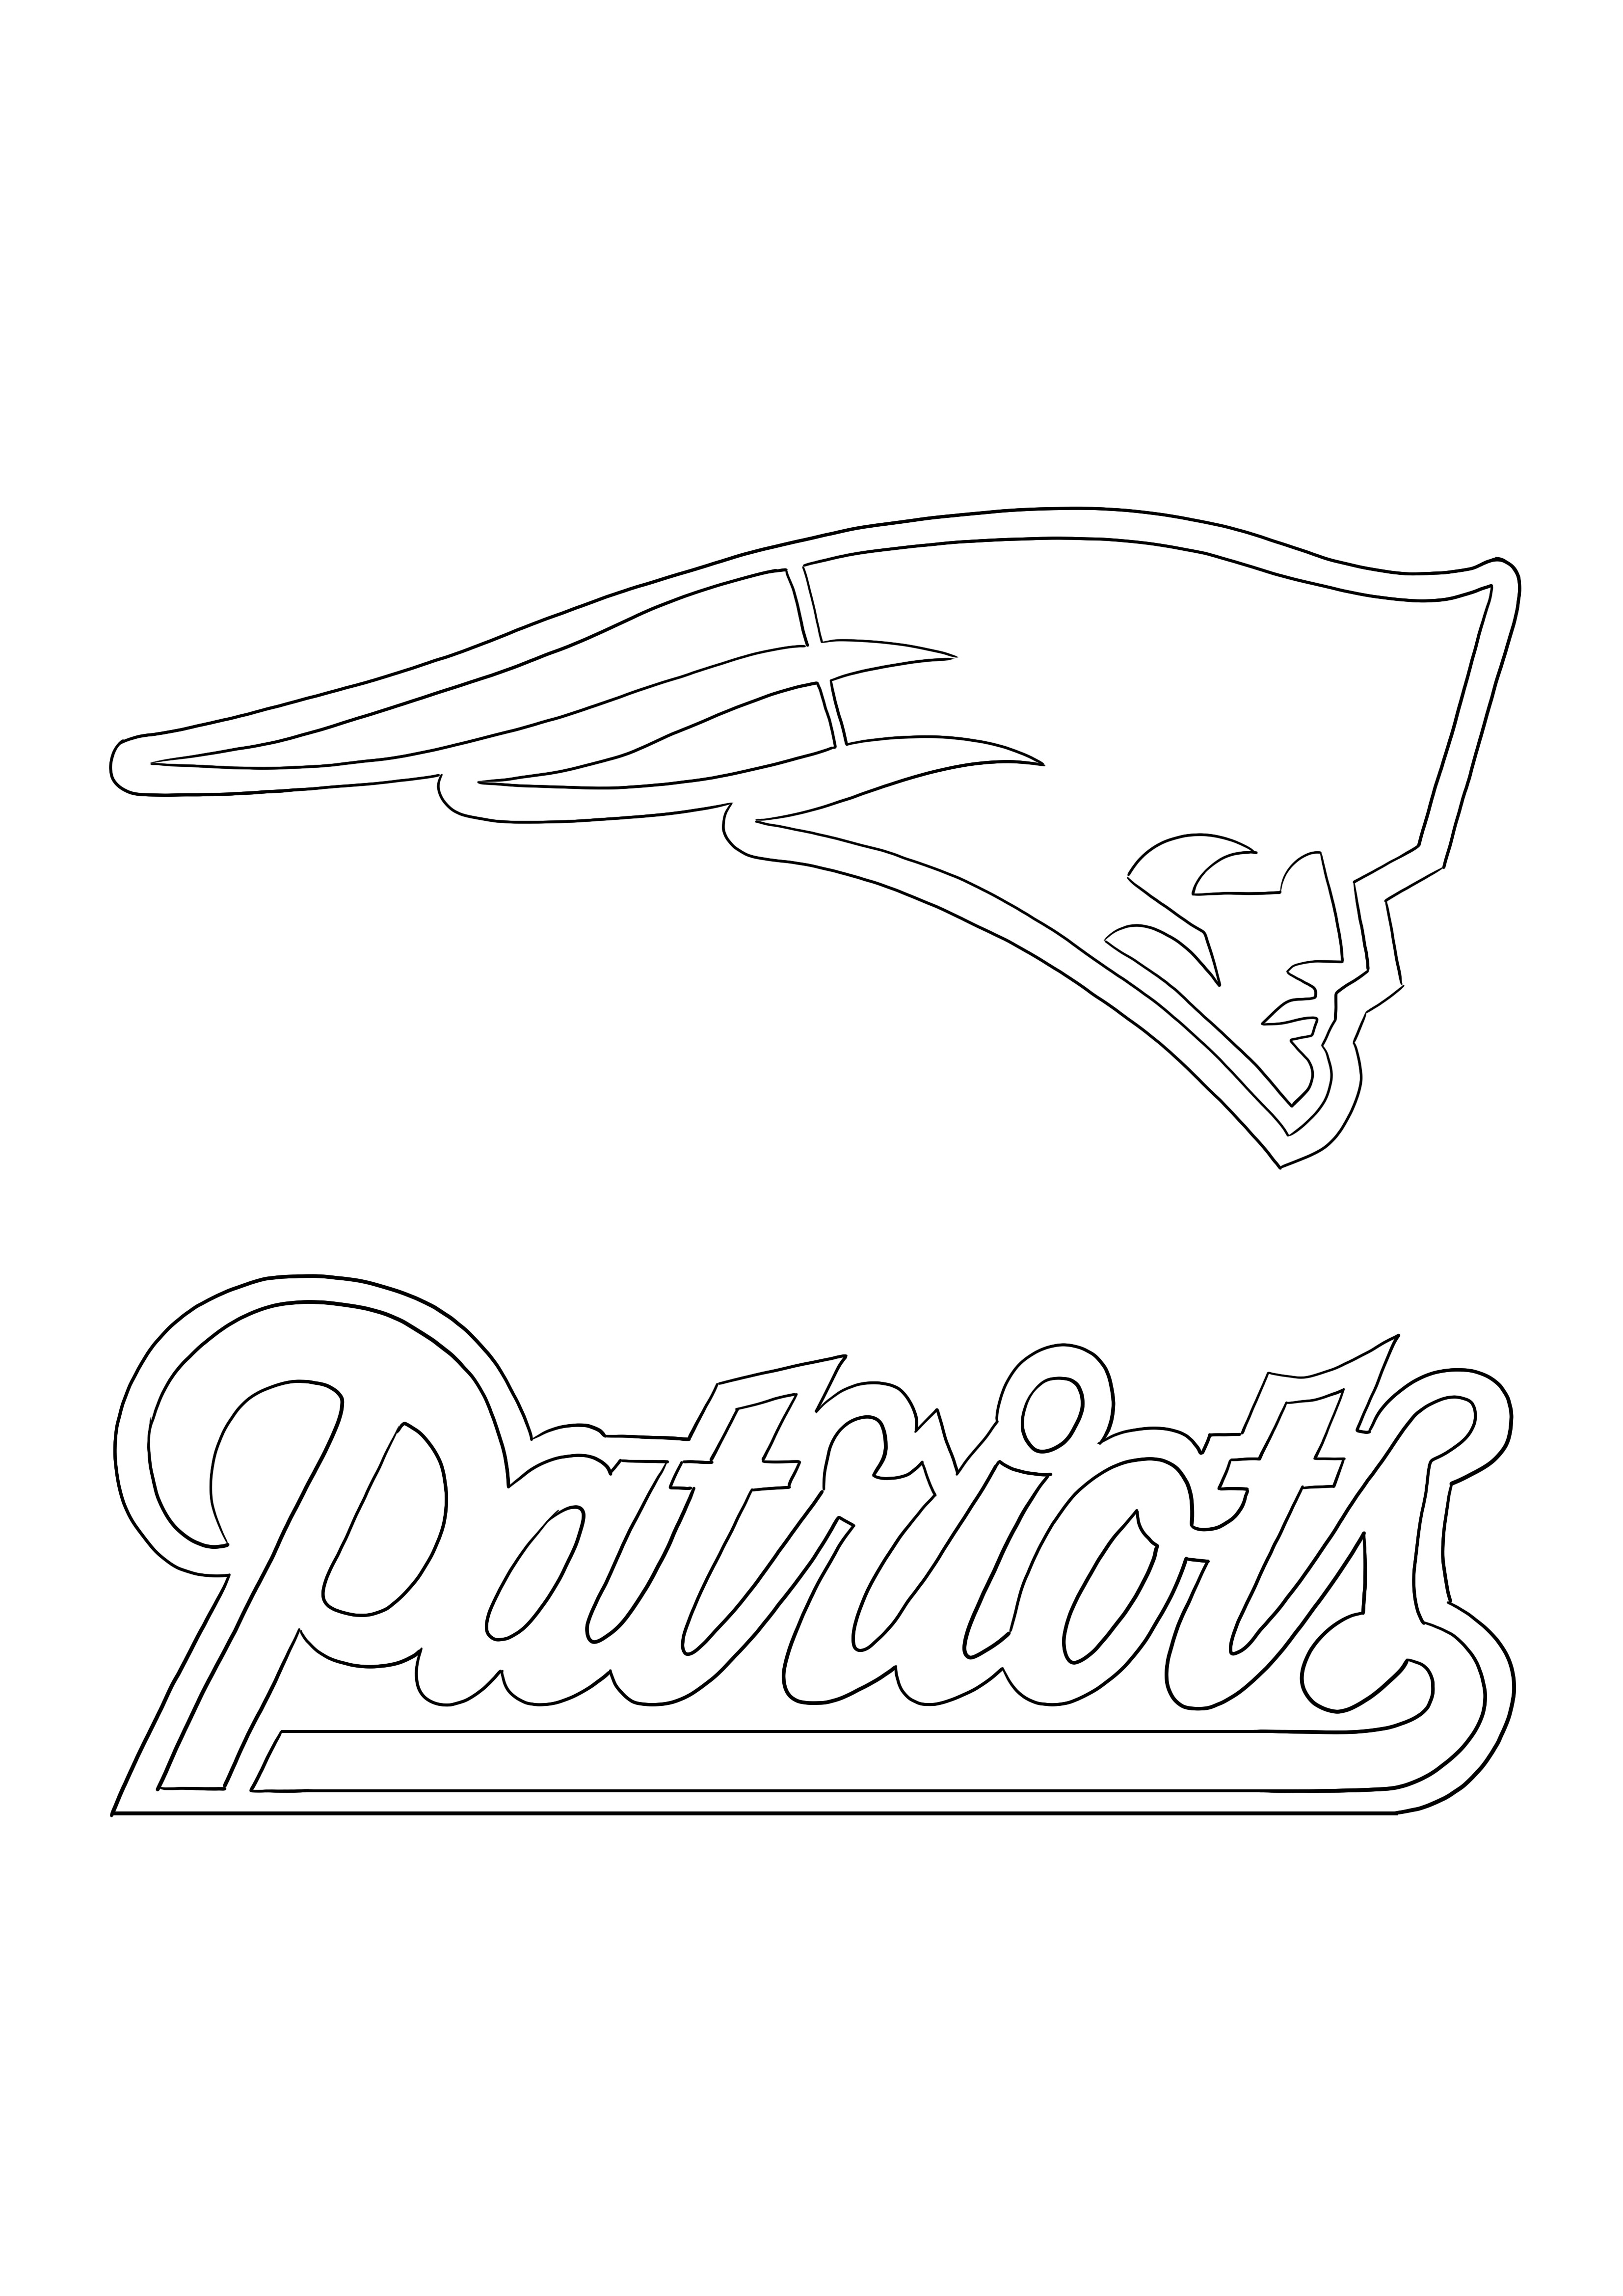 Kolorowanie logo Patriots i pobieranie za darmo